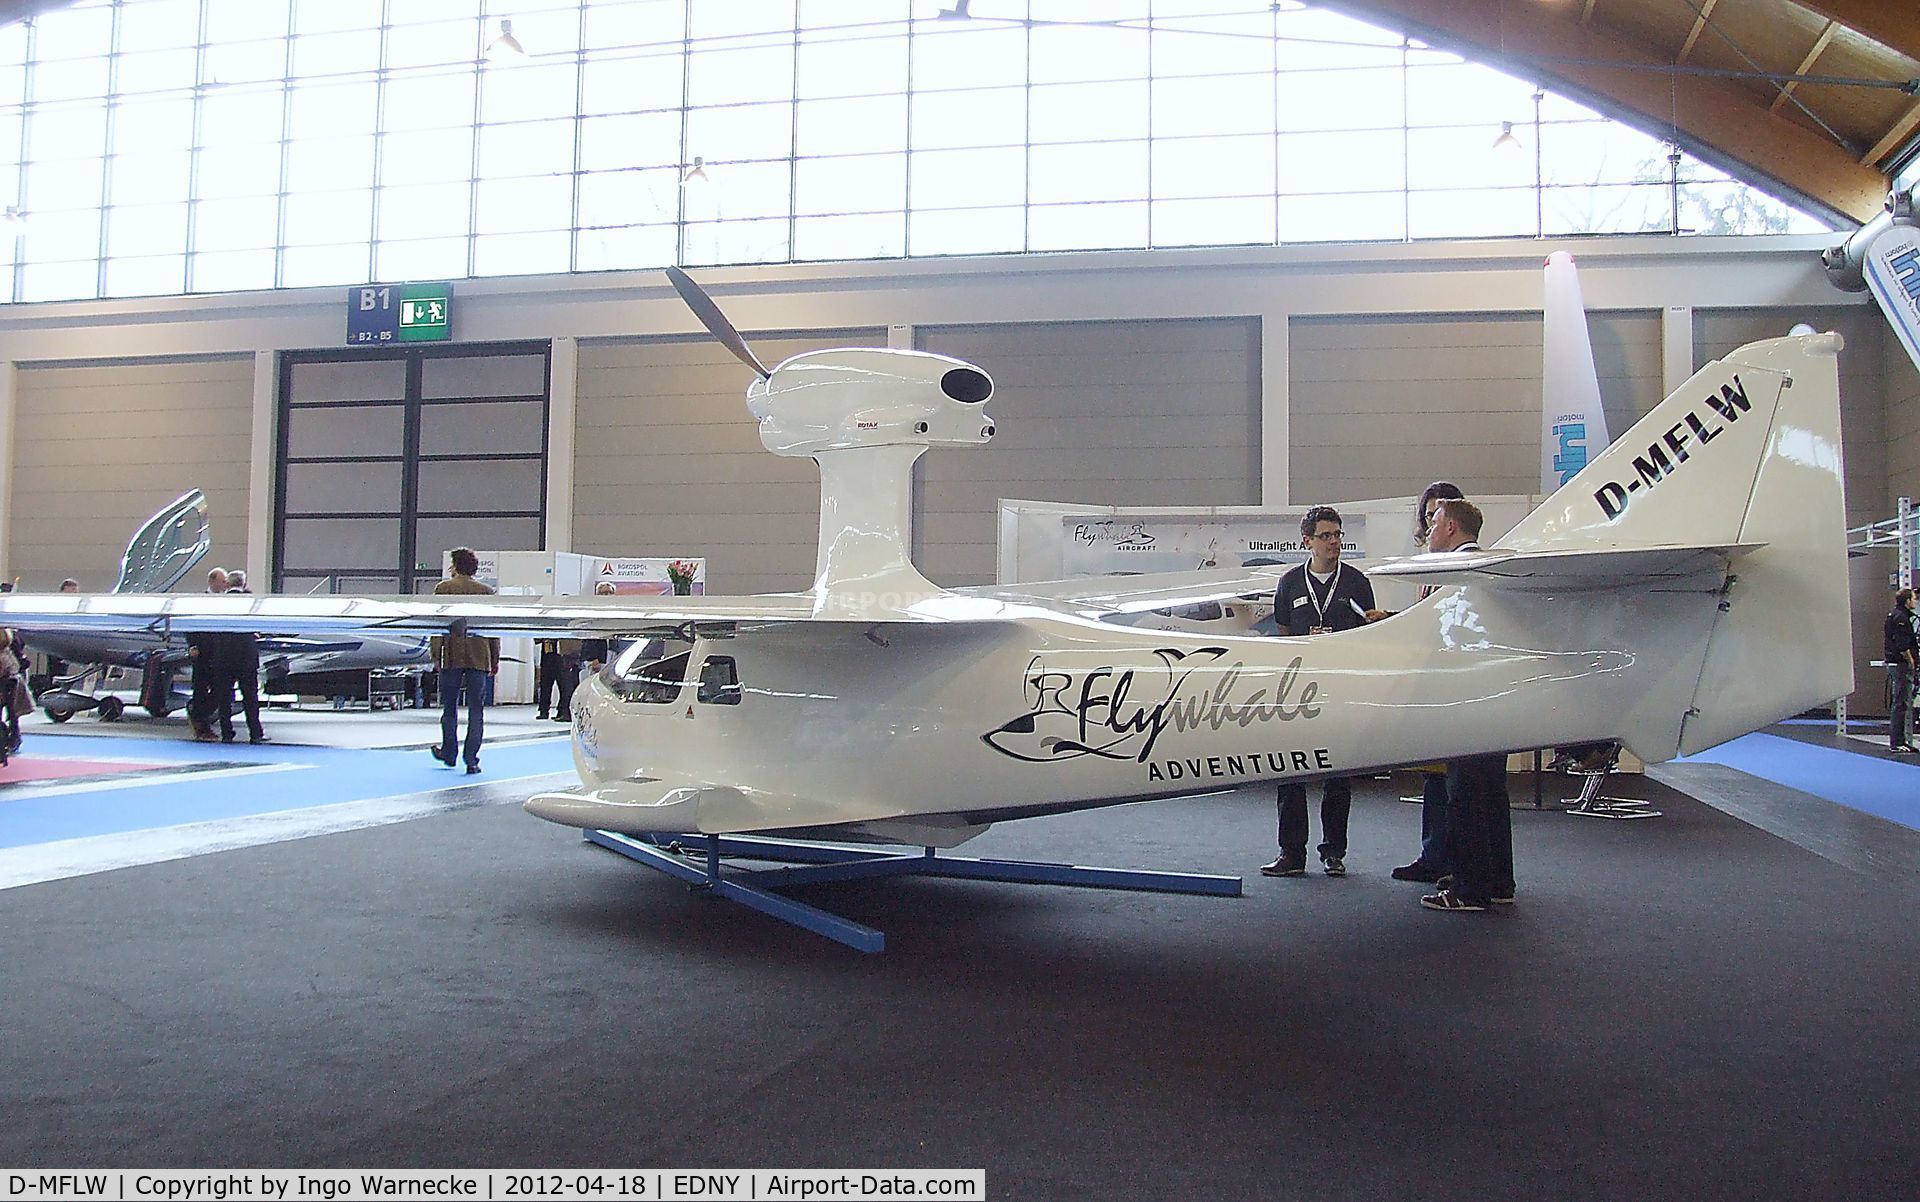 D-MFLW, 2012 Flywhale Aircraft Flywhale Adventure C/N 001, Flywhale Aircraft Flywhale Adventure at the AERO 2012, Friedrichshafen